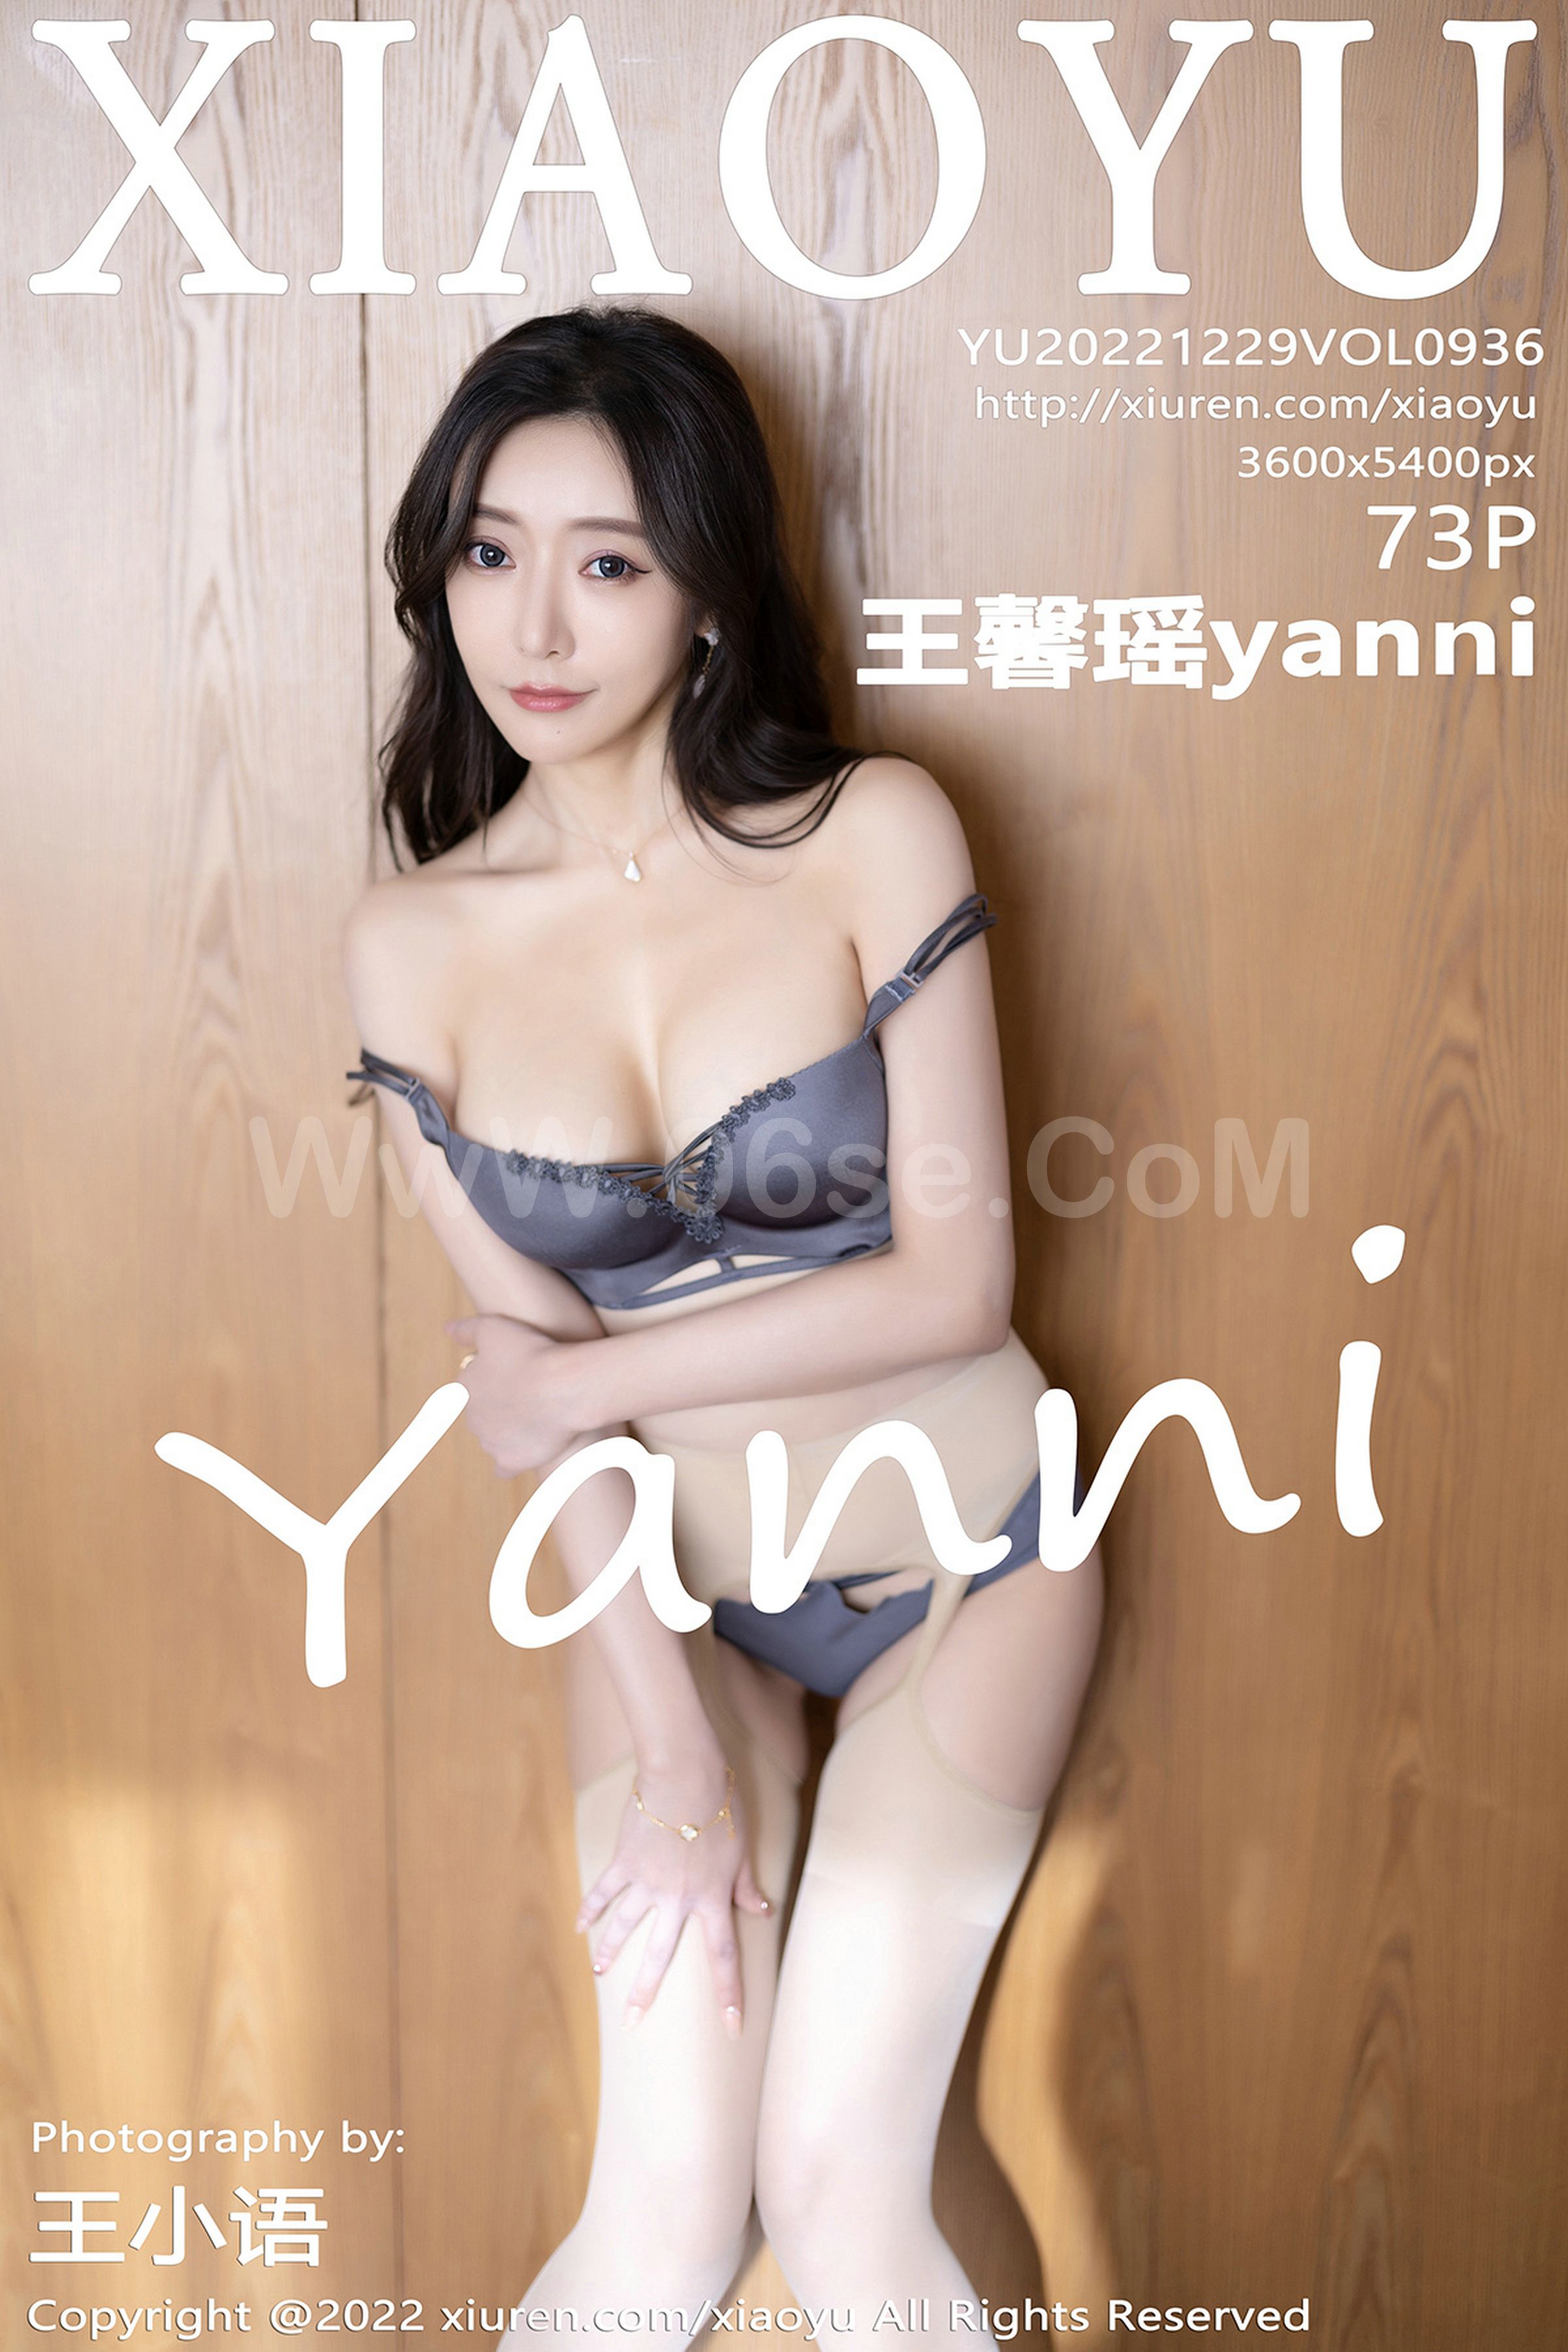 [XIAOYU语画界] Vol.936 Yanni – Wang Xin Yao (王馨瑶)-六色网-六色网